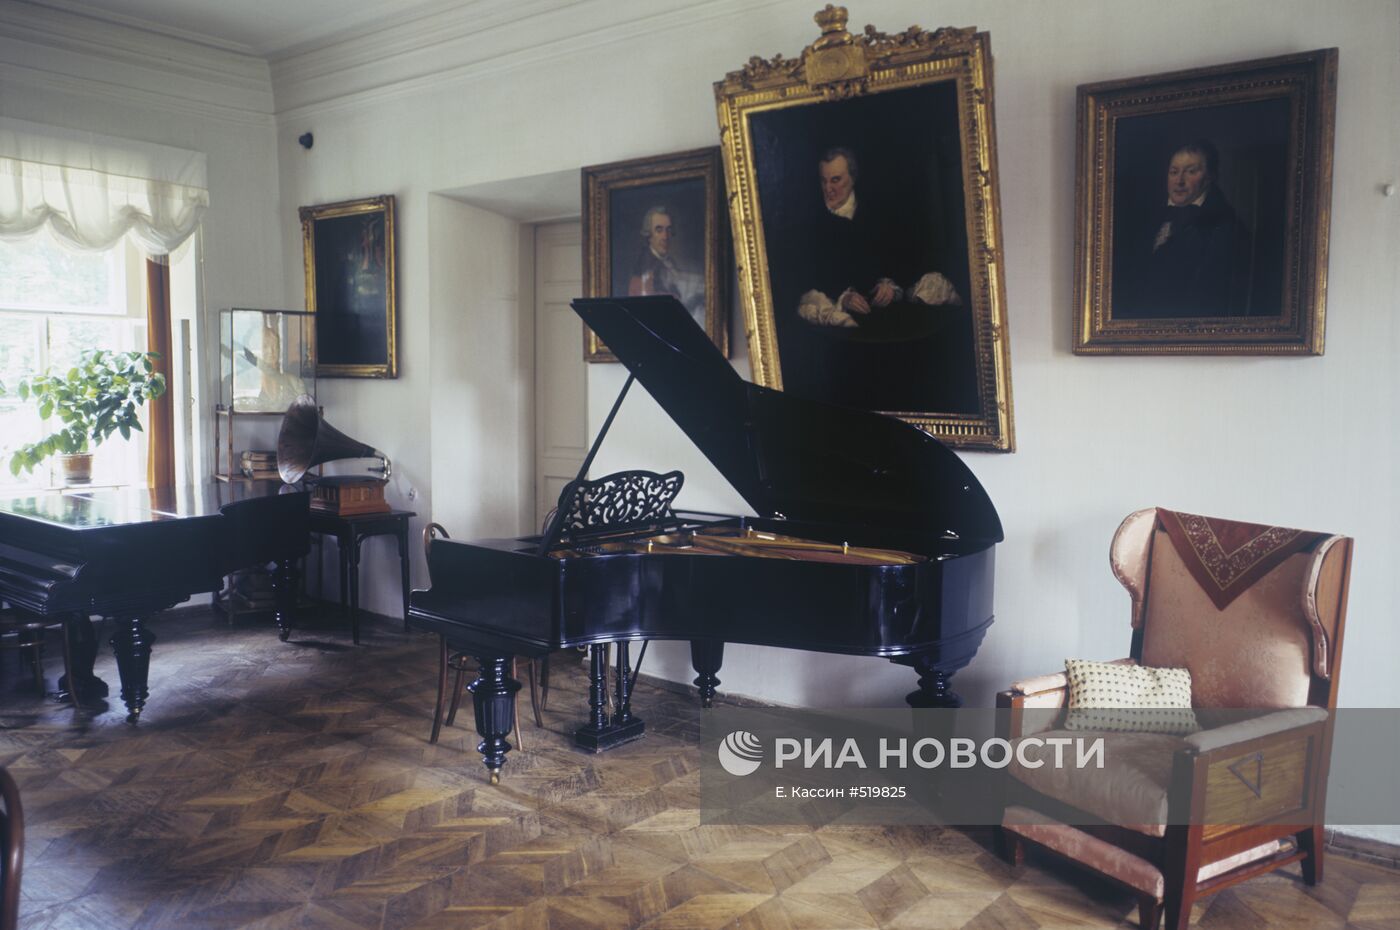 Уголок залы в доме Л.Н. Толстого